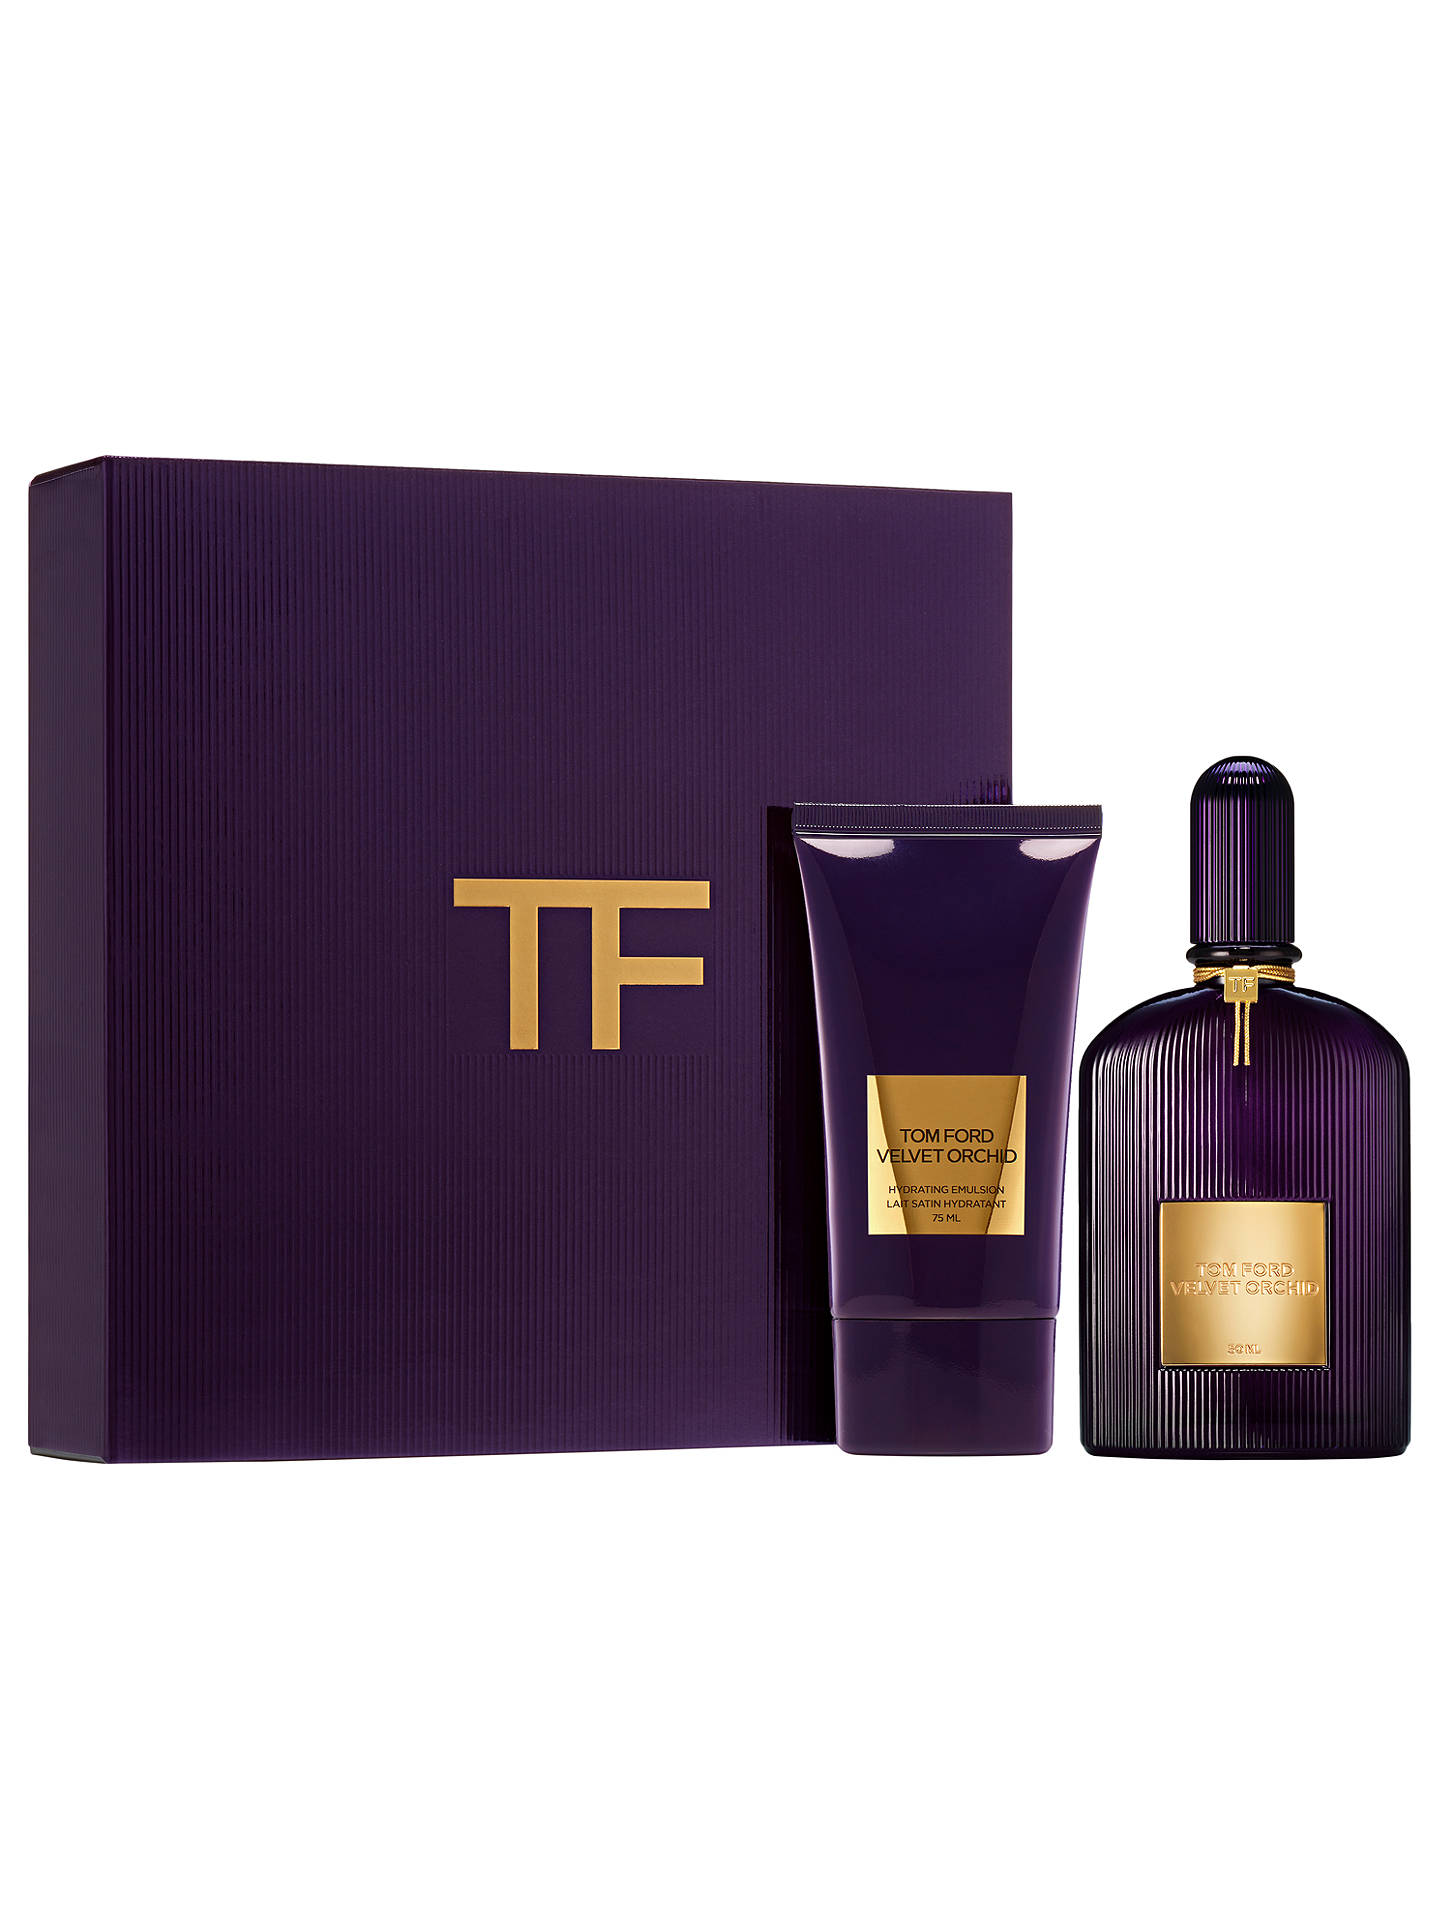 TOM FORD Velvet Orchid 50ml Eau de Parfum Fragrance Gift Set at John